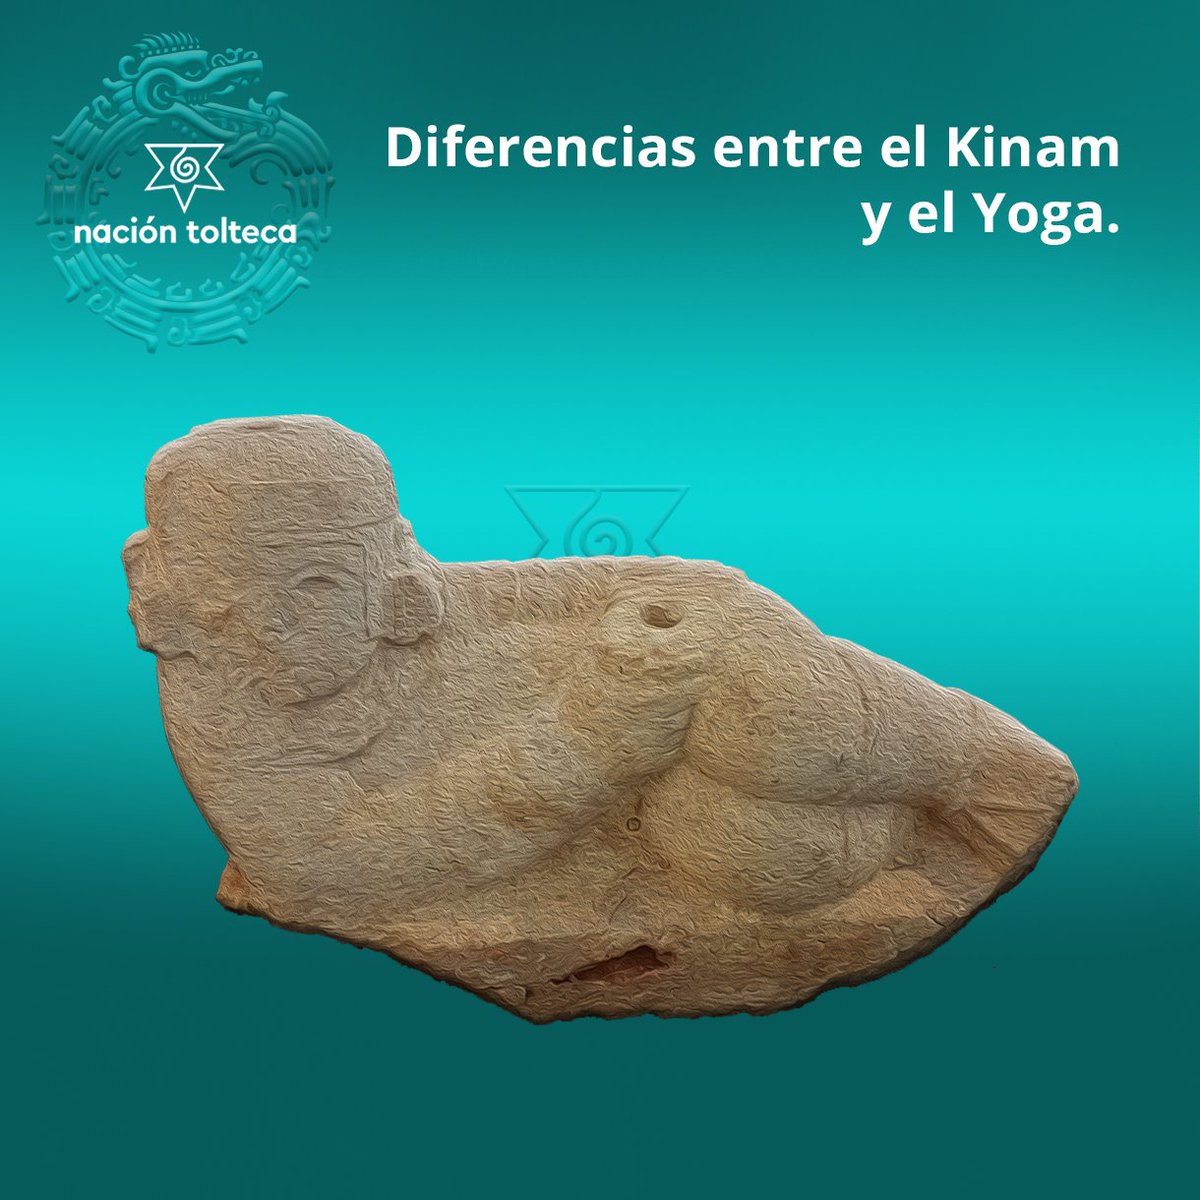 Diferencias entre el Kinam y el Yoga en las posturas.

• Tiene pocas, poseen grados y variantes
• Casi todas son exclusivas de México
• Se organizan en forma radial, reflejan la cosmología tolteca
• Están asociadas a ejercicios nahuálicos
• Se practican en sueños

#kinam